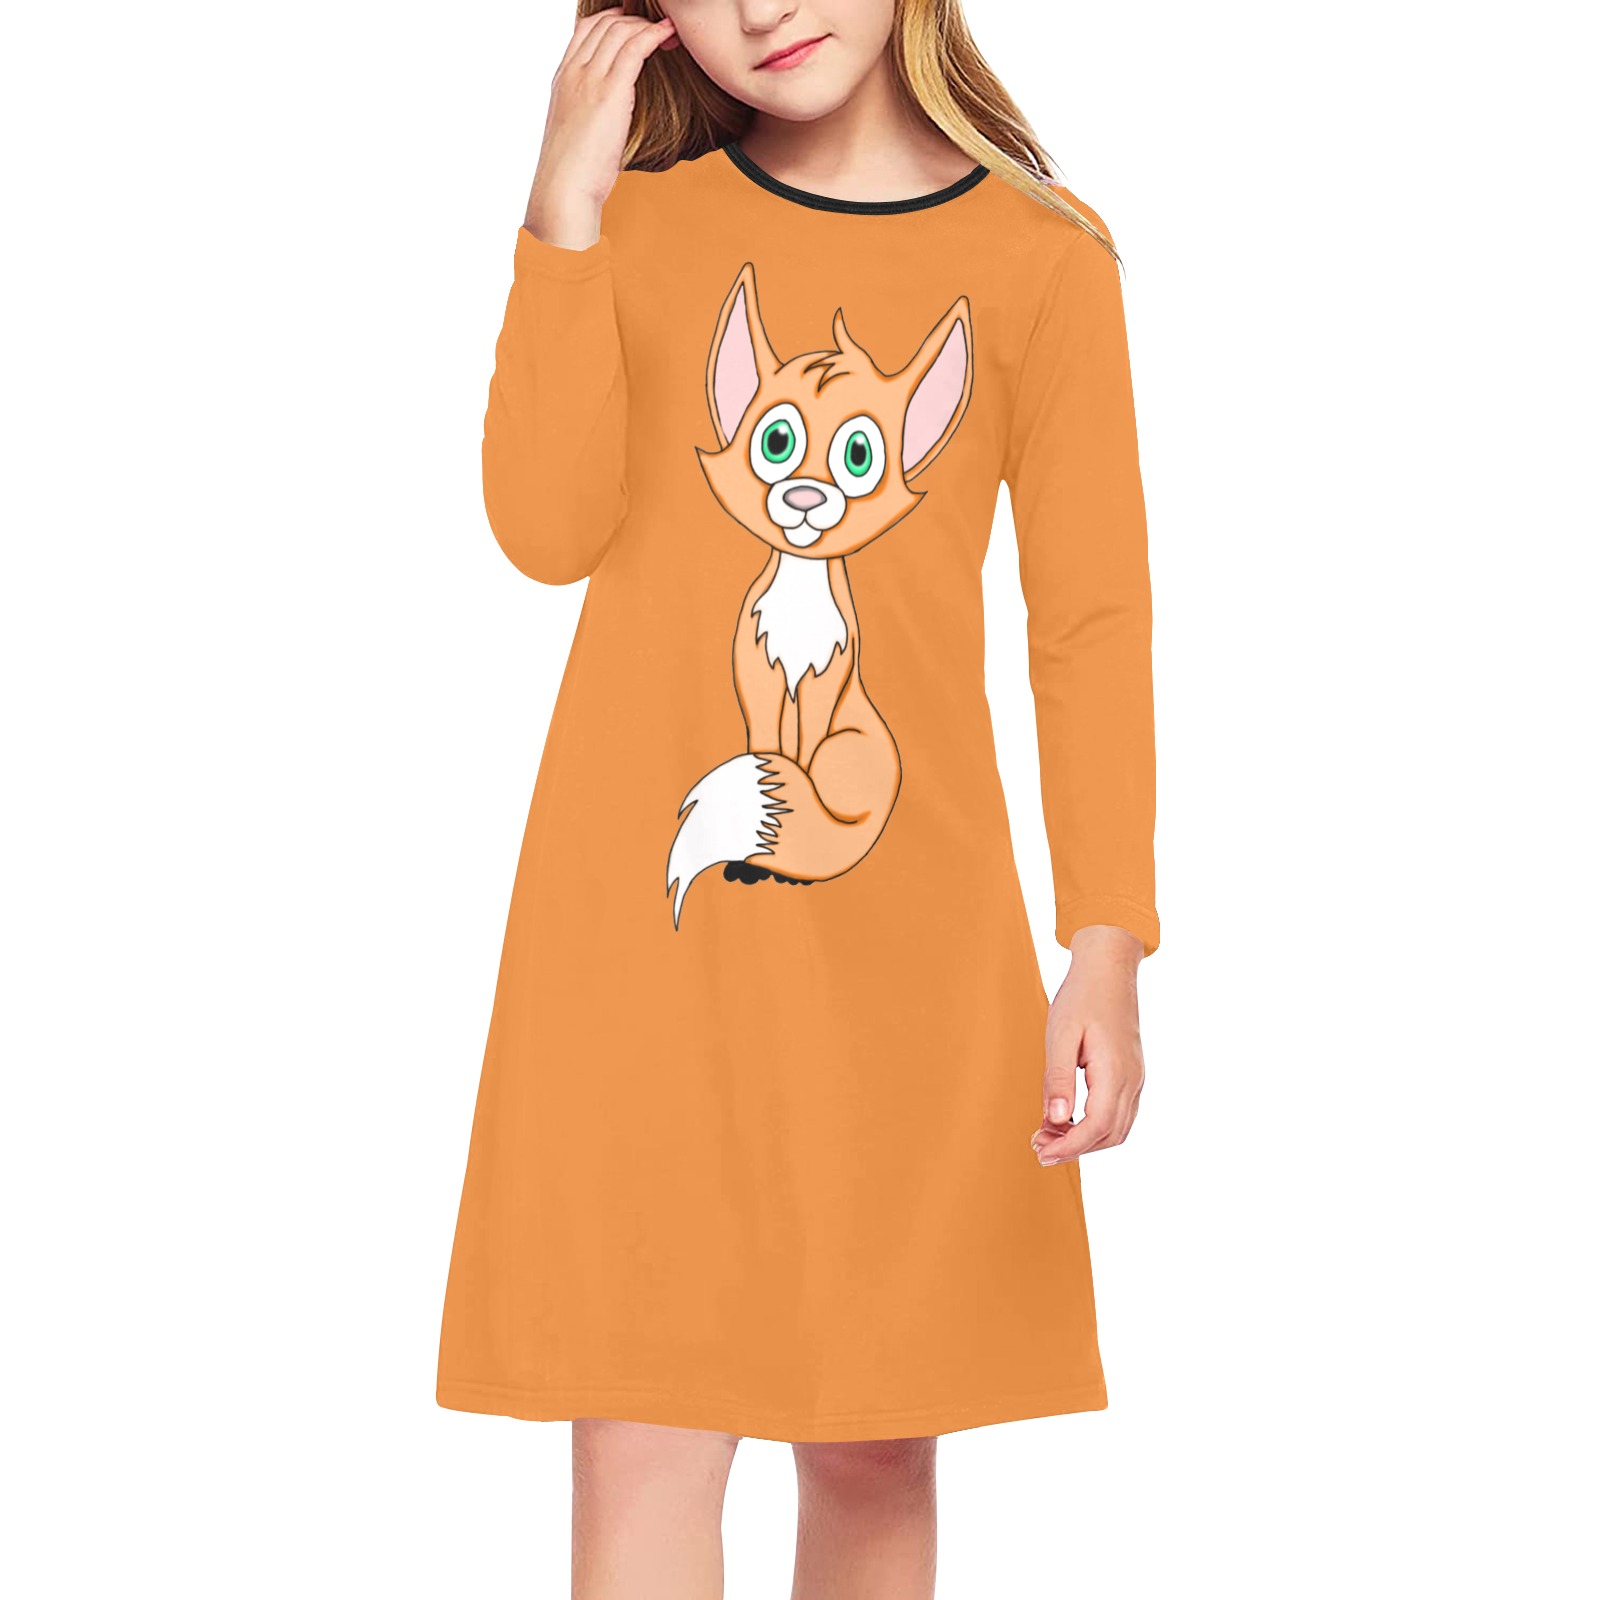 Foxy Roxy Orange Girls' Long Sleeve Dress (Model D59)